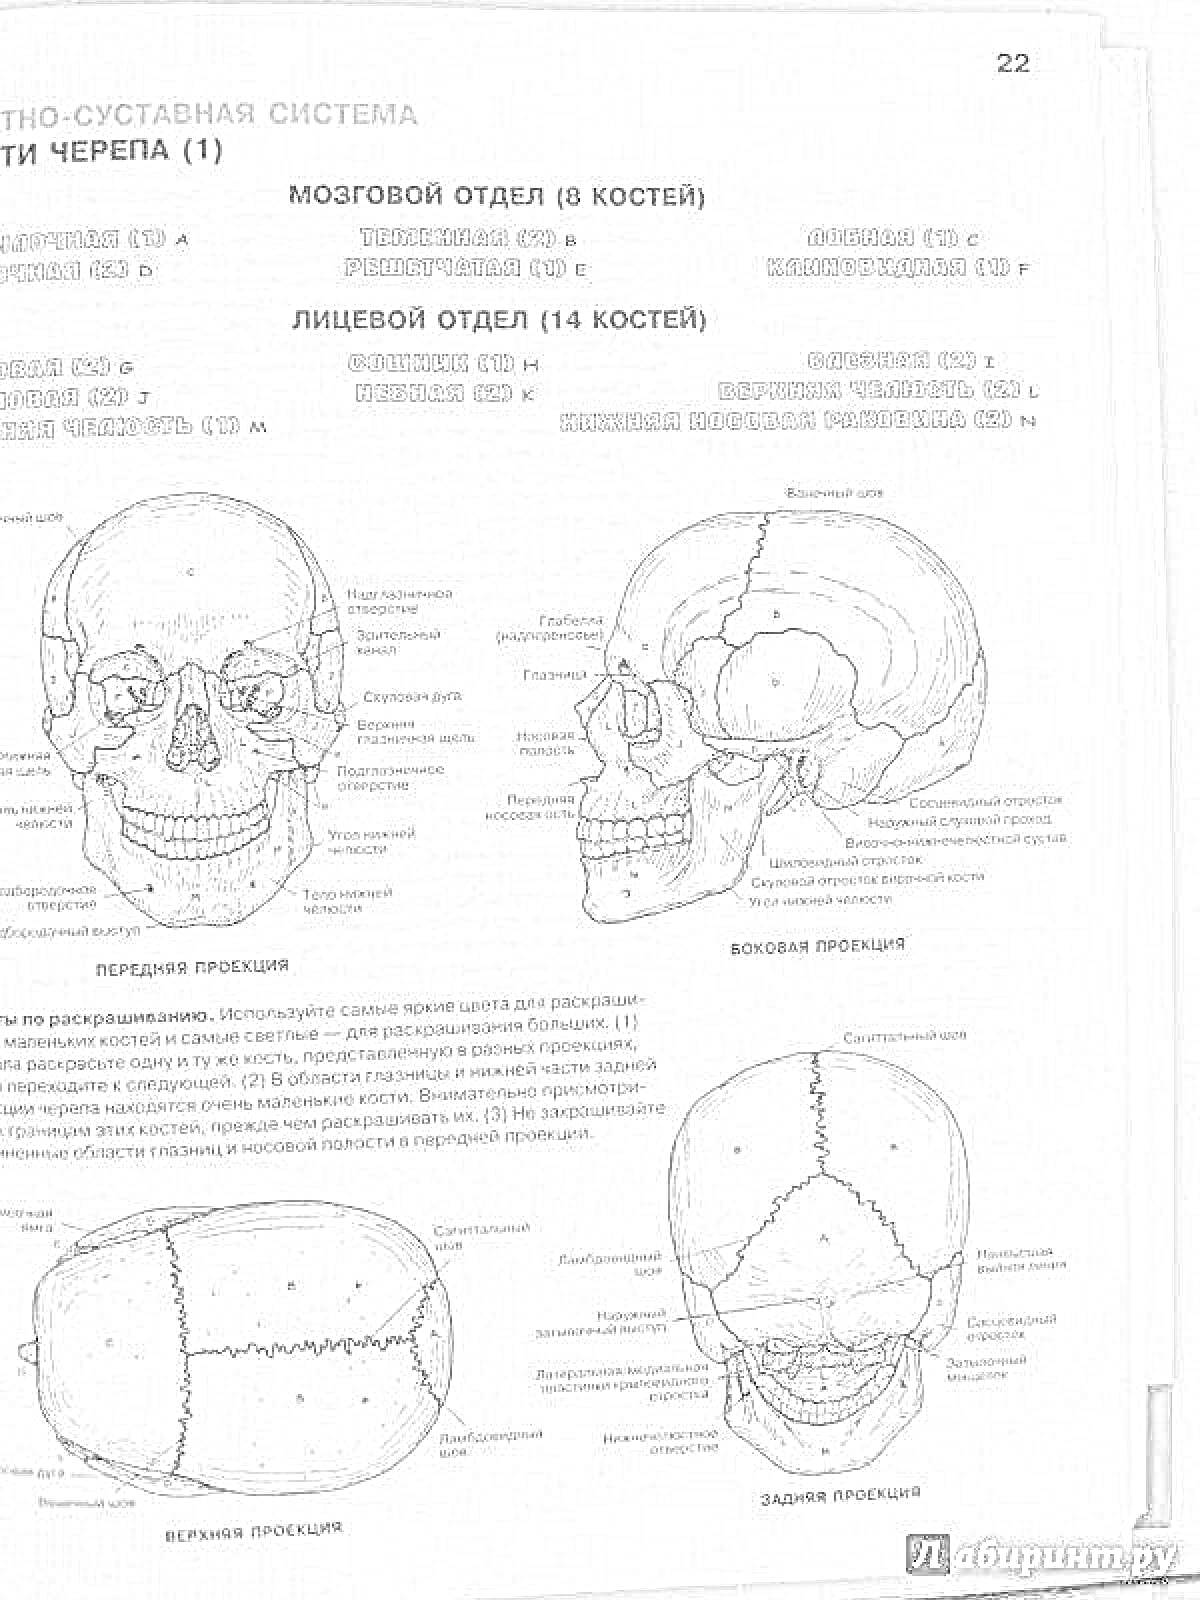 Изображения черепа с обозначениями всех его частей